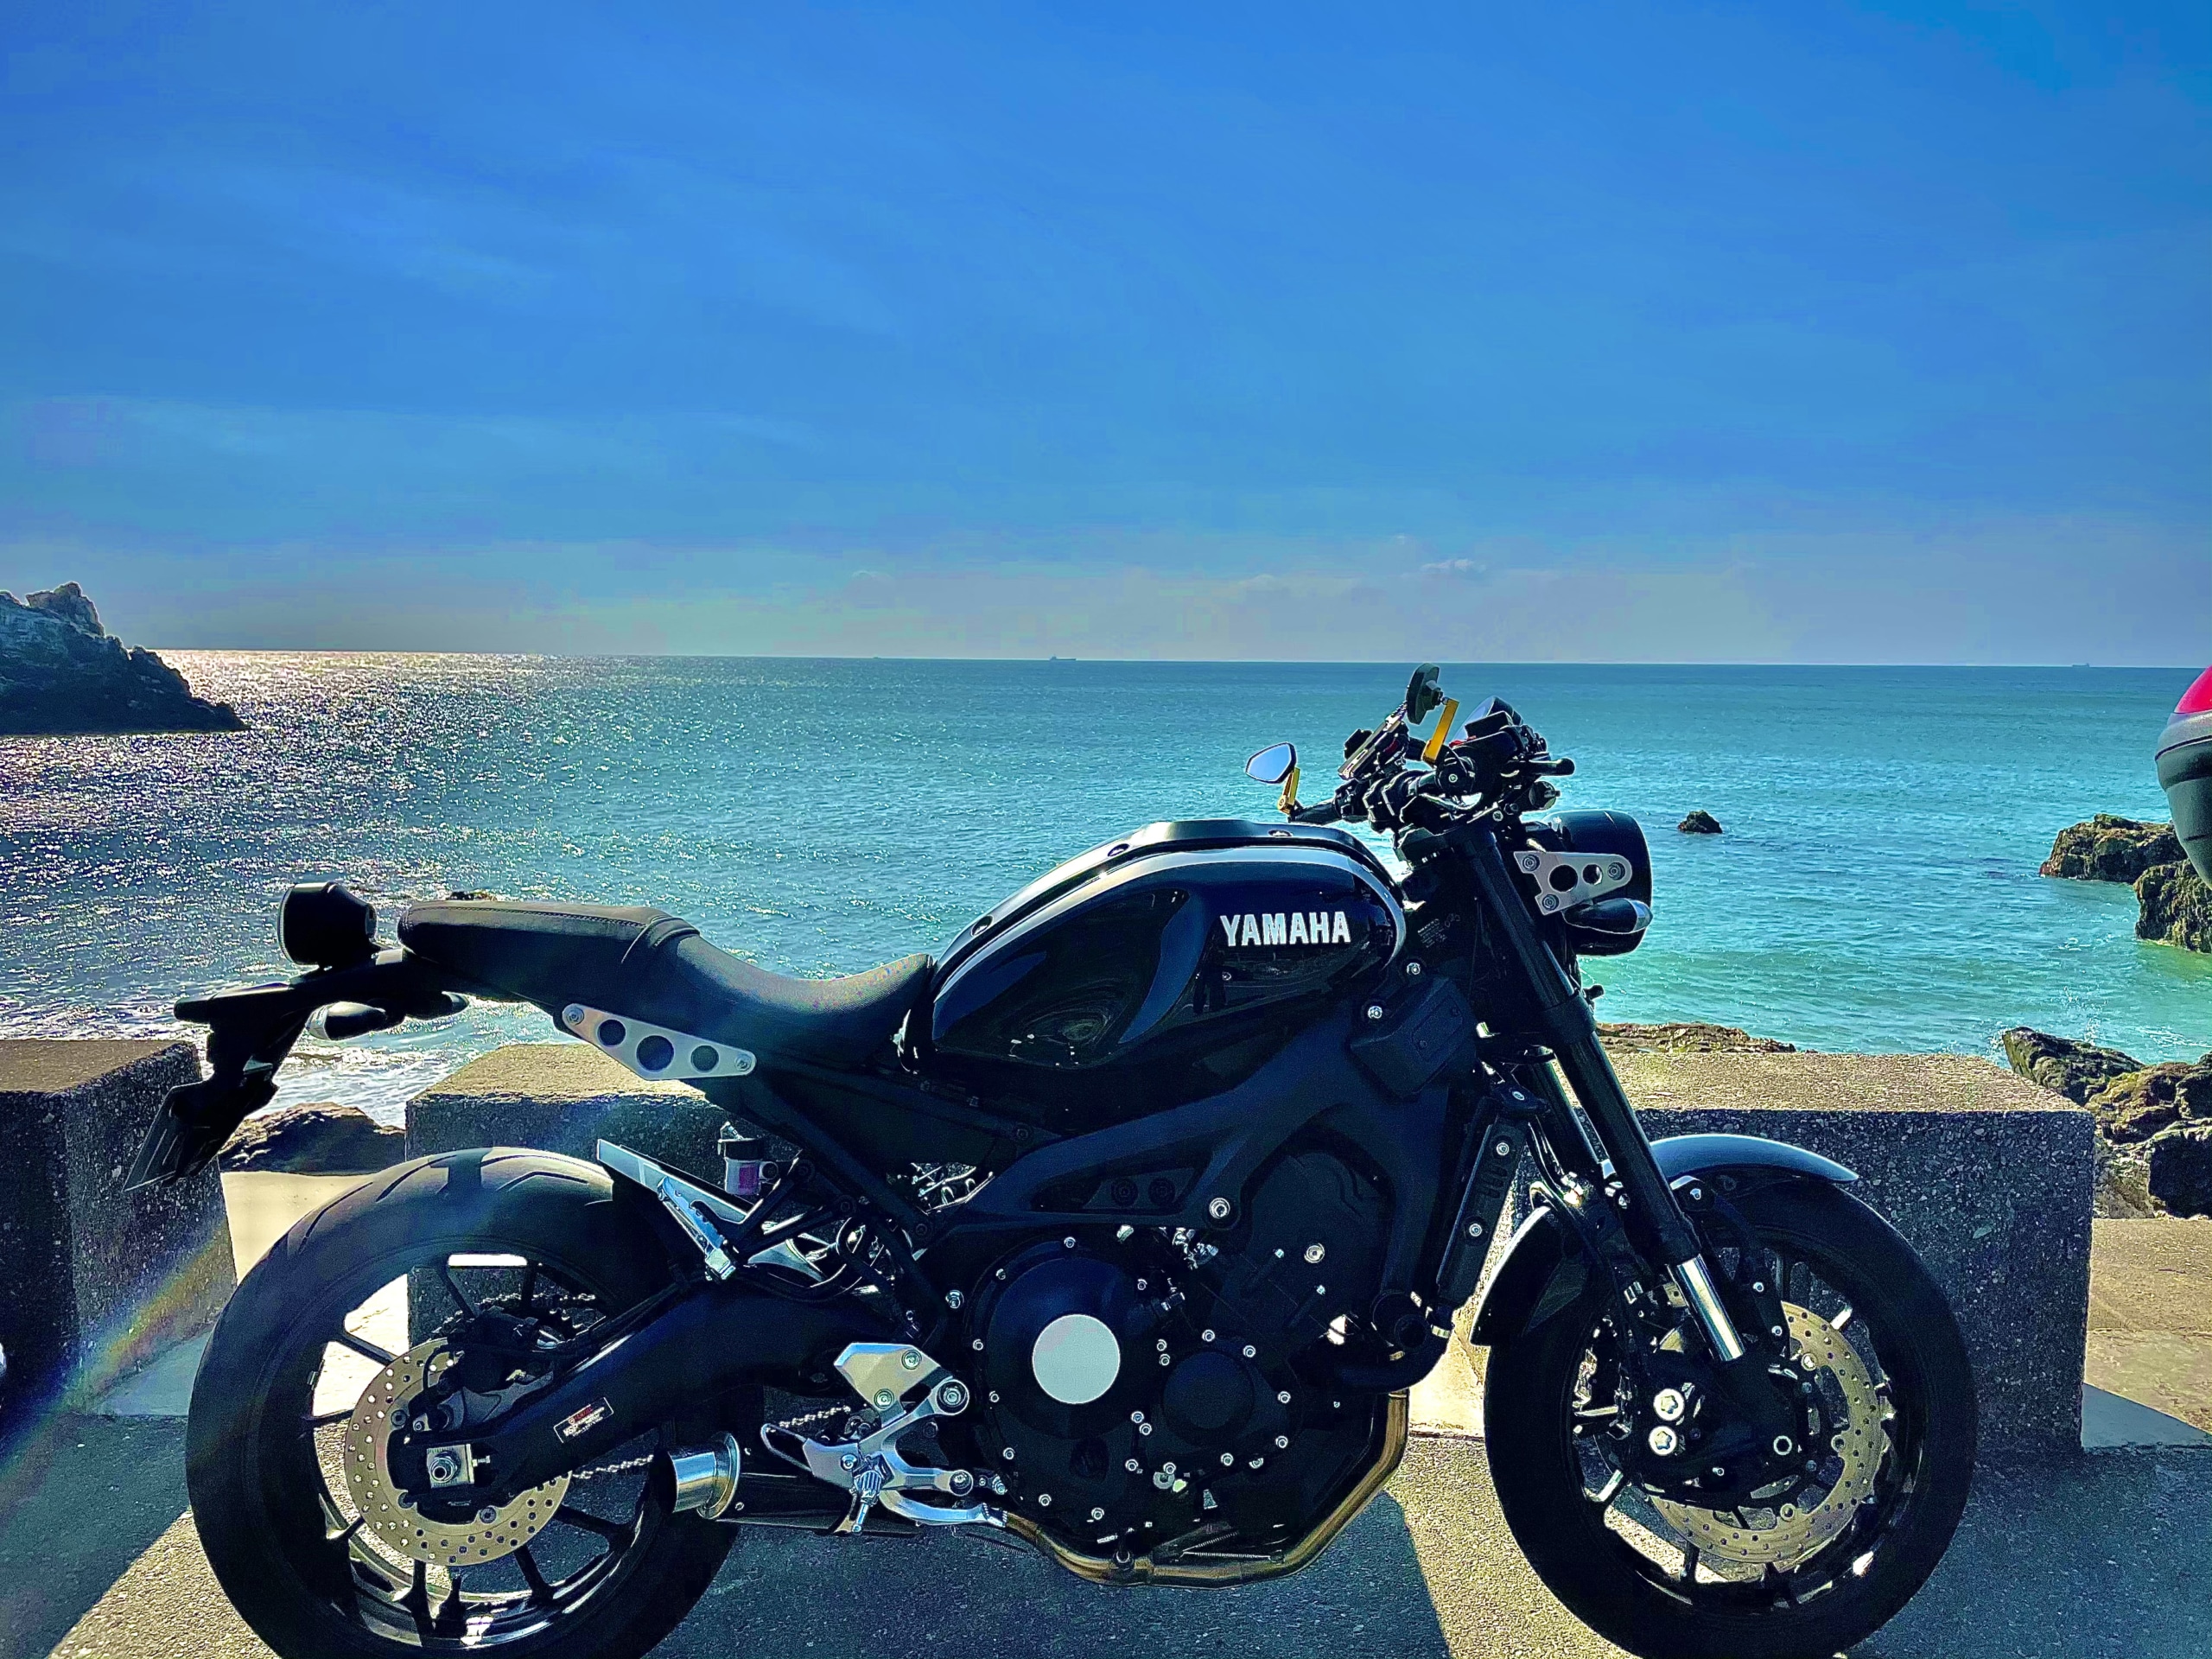 淡青な海と漆黒のバイク ツーリングフォトグランプリ タンデムスタイル